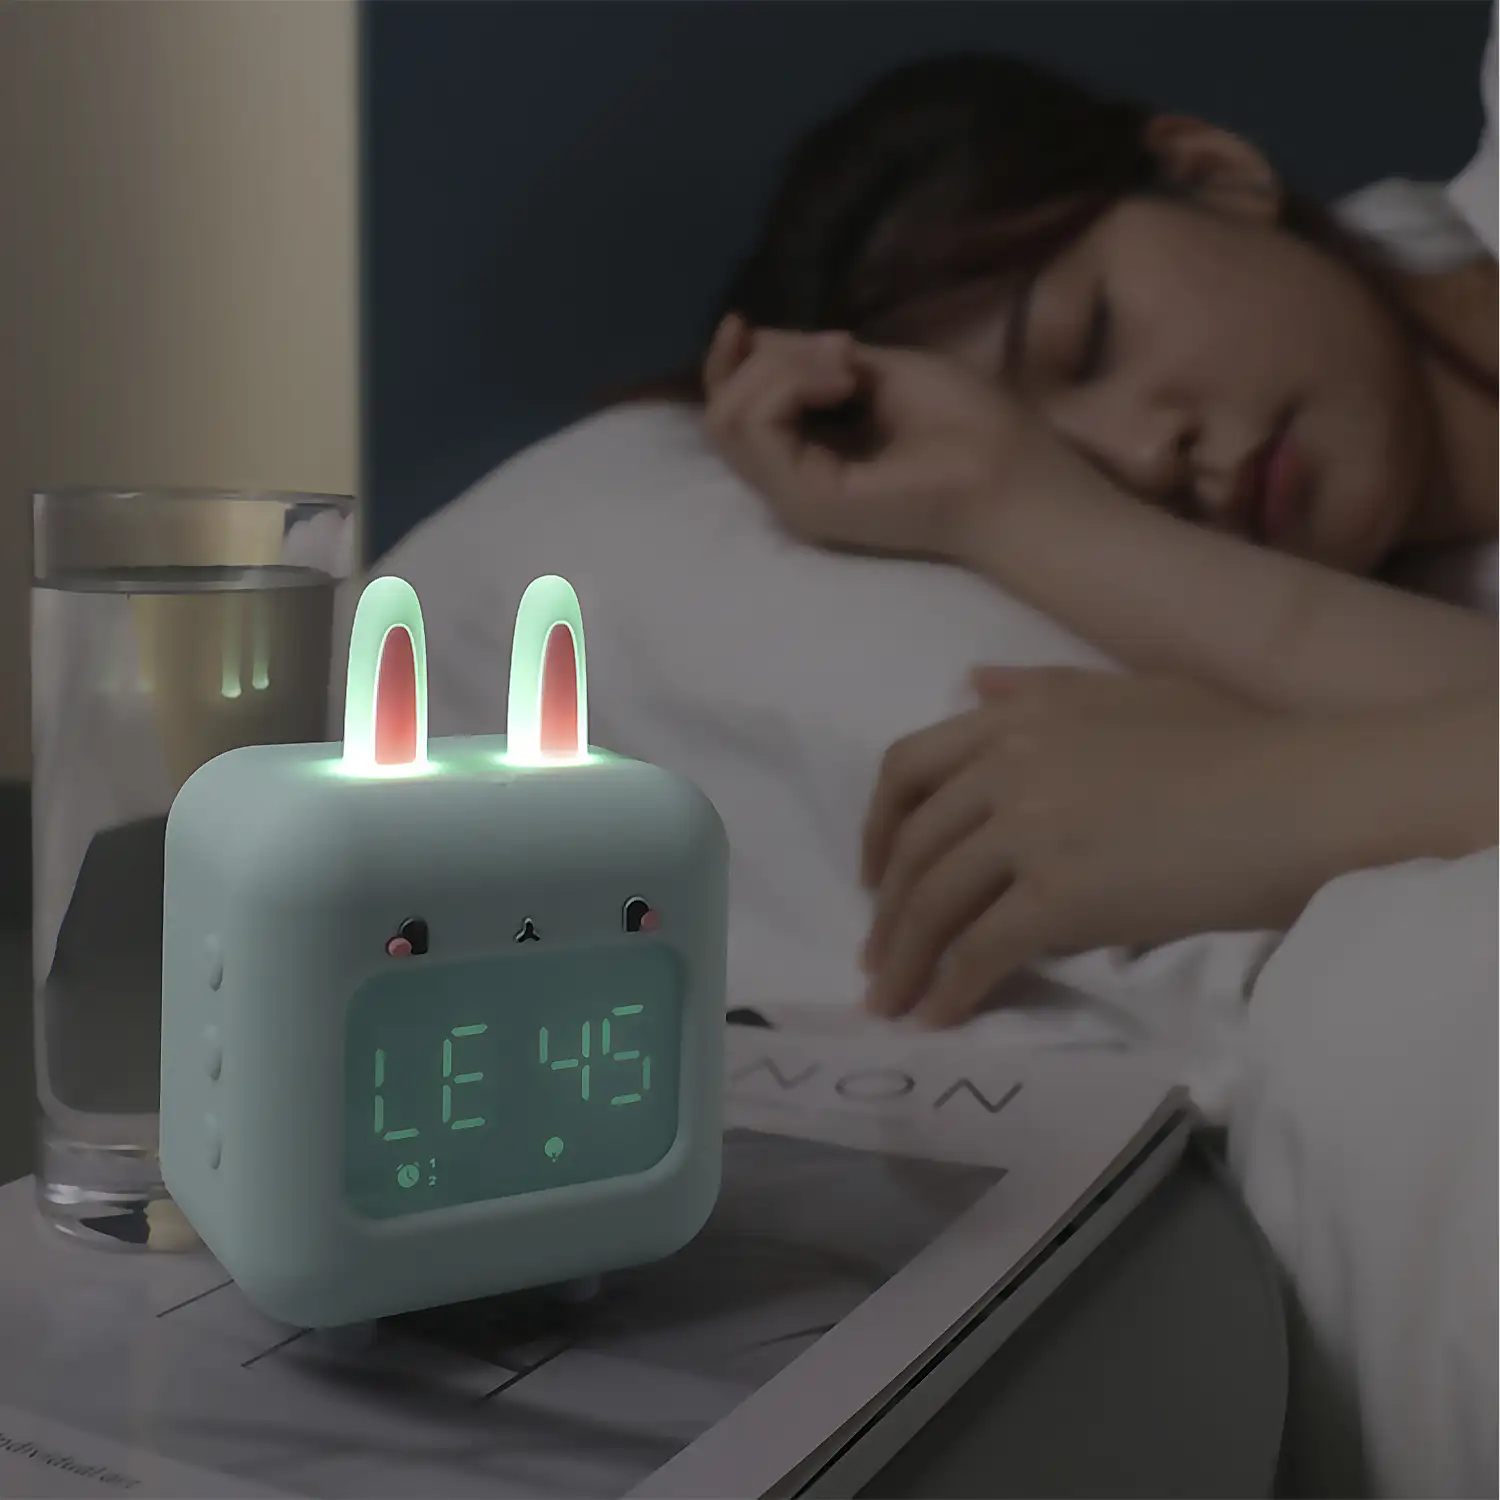 Reloj despertador infantil Conejito con luz LED nocturna. Música ambiental para dormir. Batería recargable.